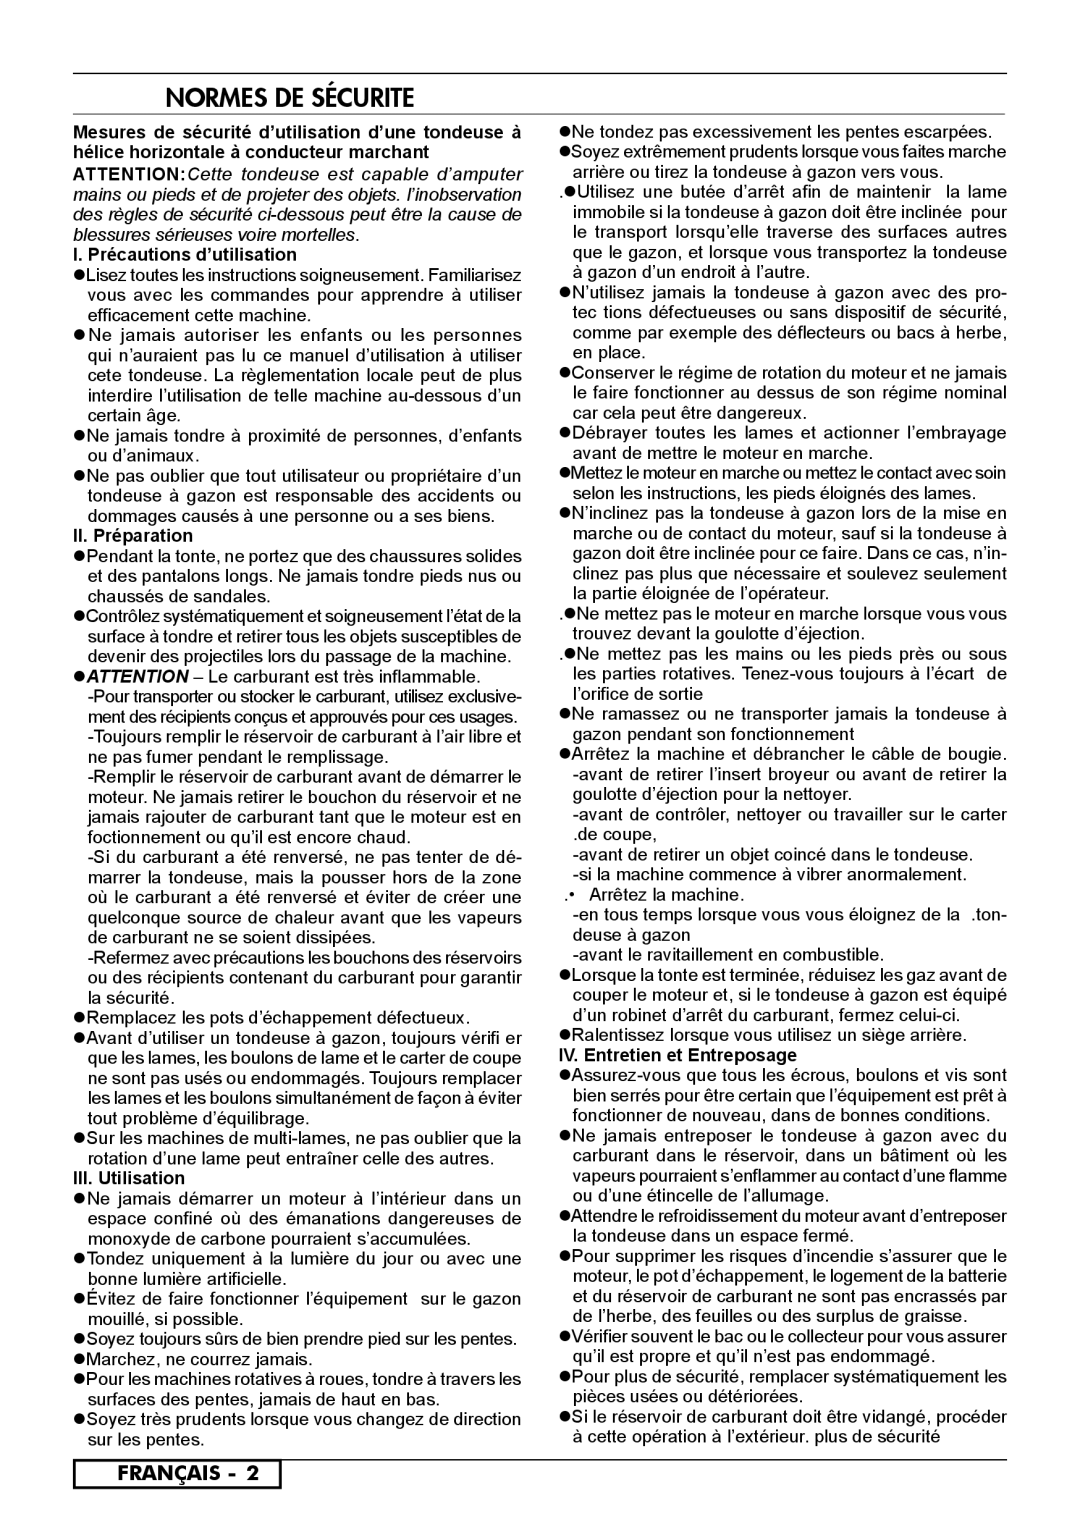 Husqvarna 966498101 Normes De Sécurite, Français, I. Précautions d’utilisation, II. Préparation, III. Utilisation 